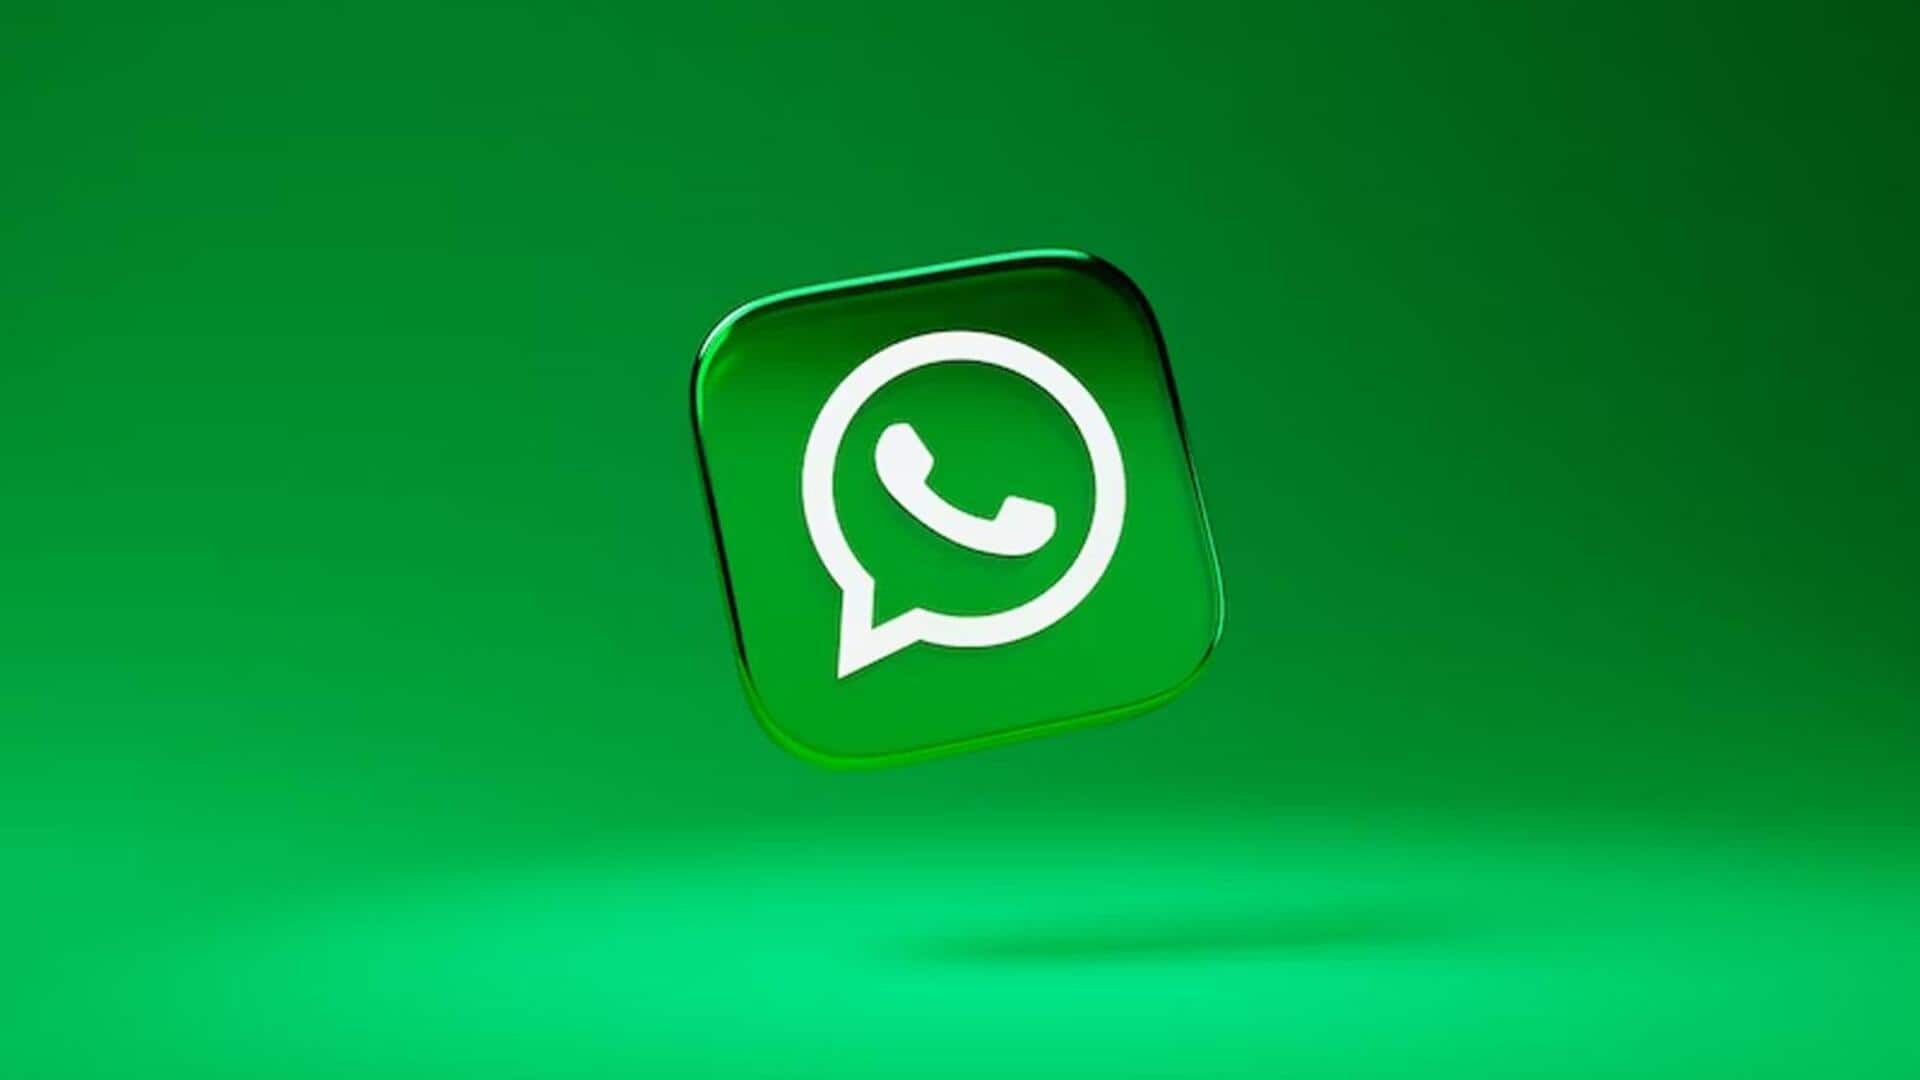 व्हाट्सऐप रोल आउट कर रही कैप्शन मैसेज एडिट फीचर, एंड्रॉयड और iOS के लिए है उपलब्ध 